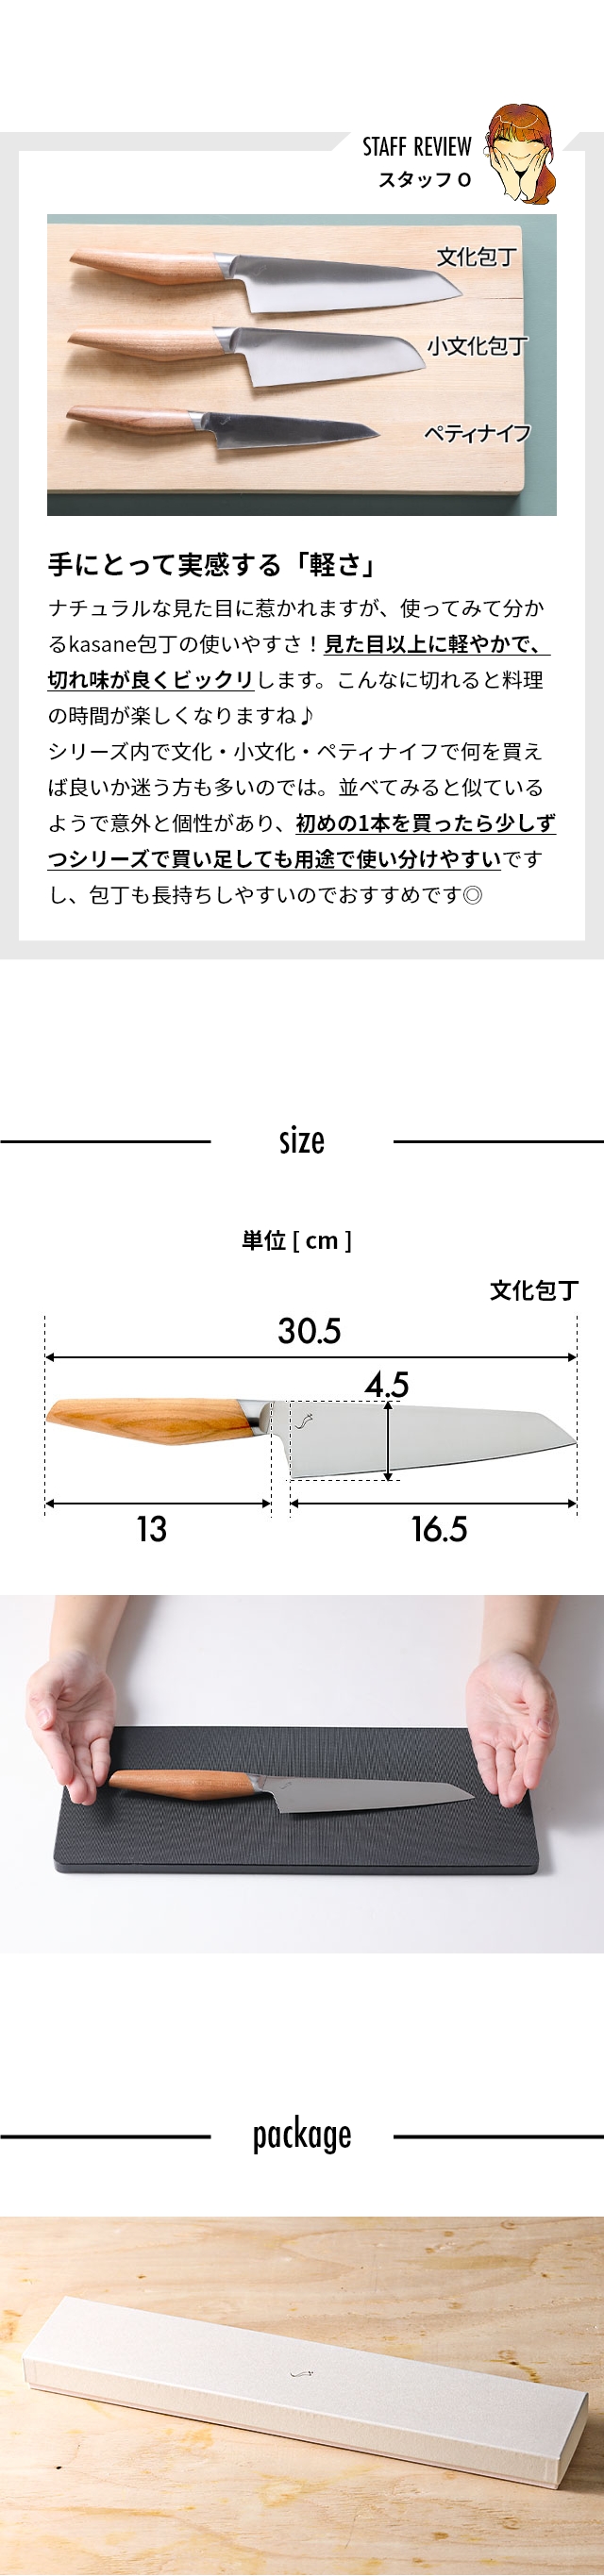 kasane (カサネ) 文化包丁 16.5cm